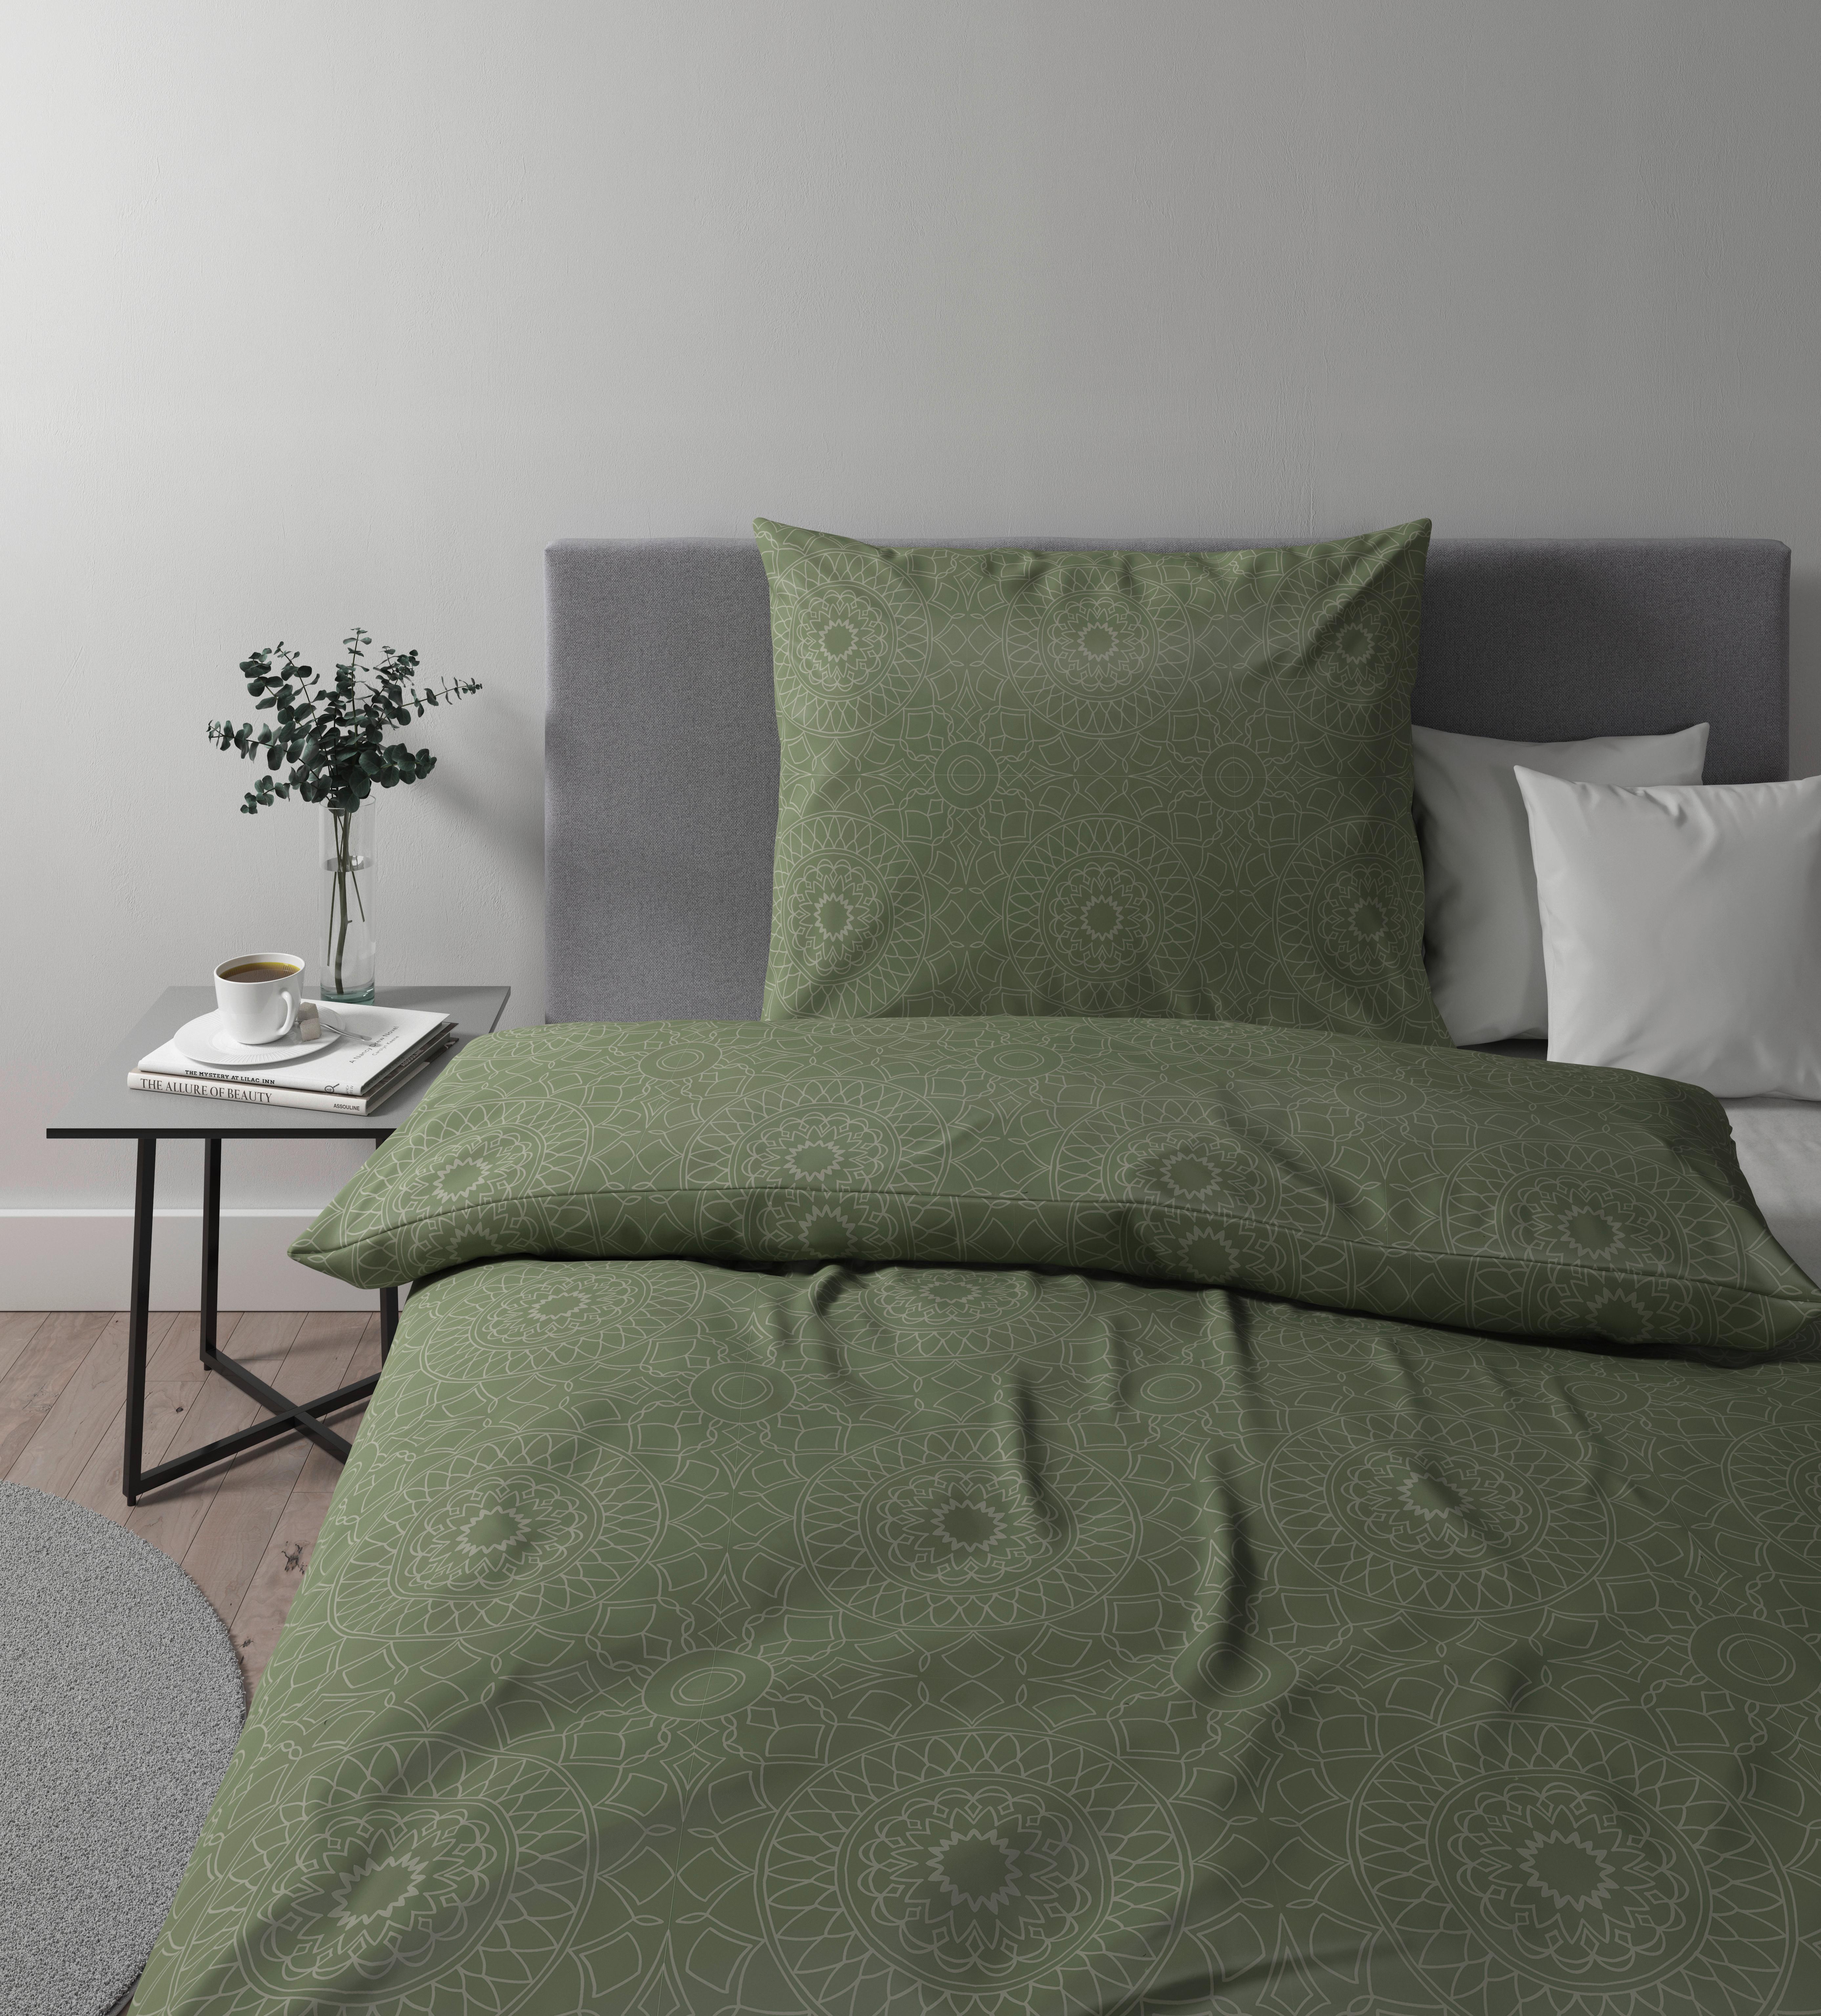 Povlečení Elisa, 140/200cm, Zelená - zelená, Moderní, textil (140/200cm) - Premium Living